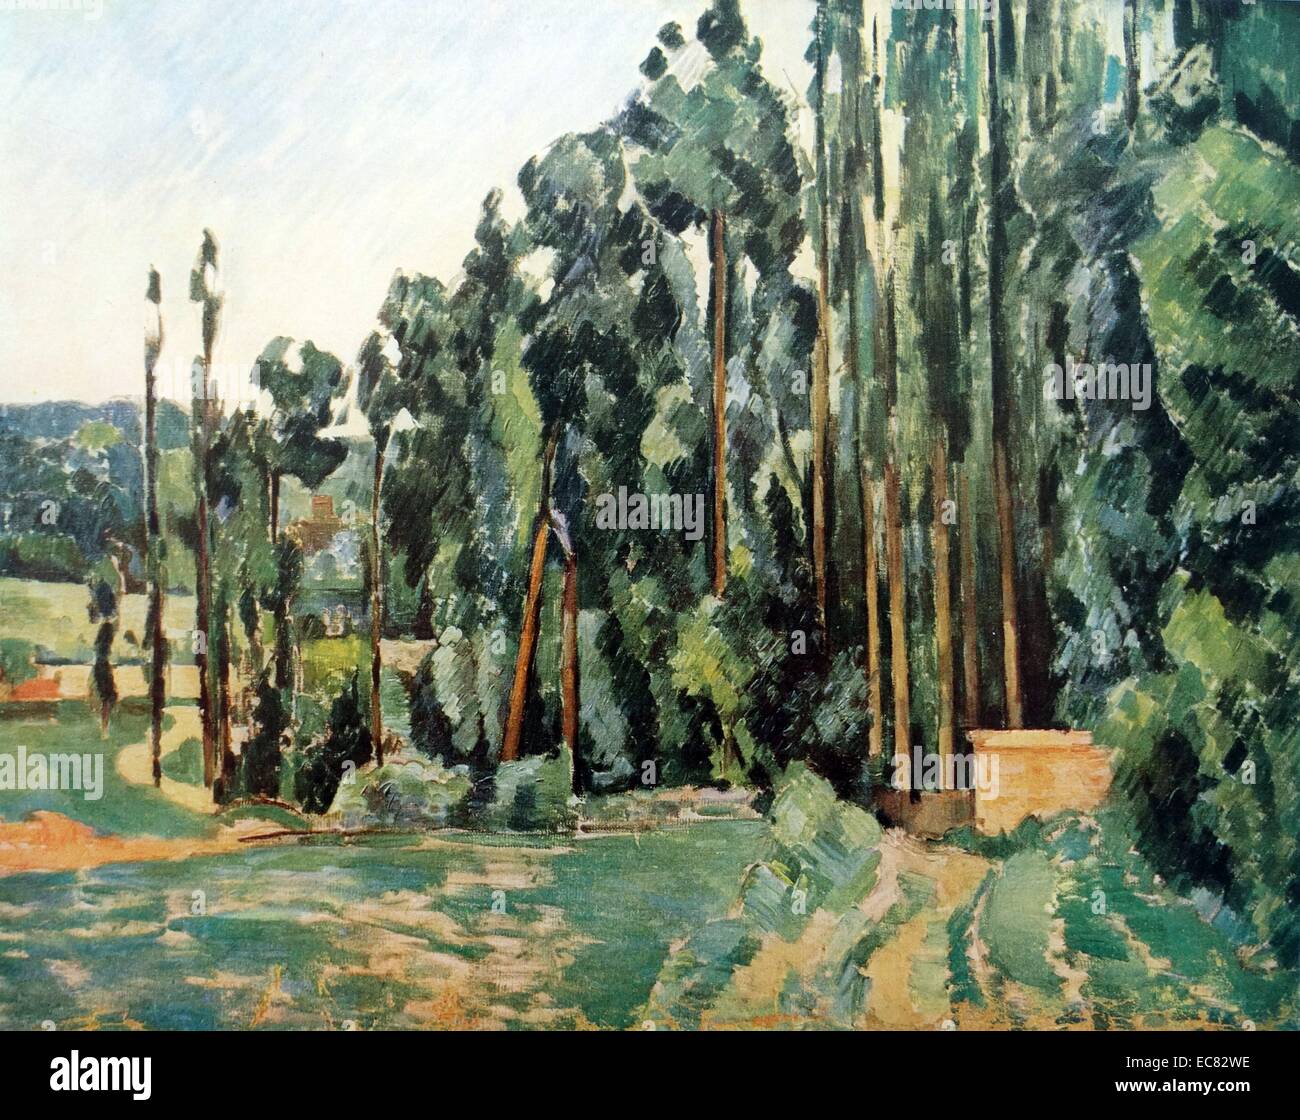 Gemälde mit dem Titel "Pappeln" von Paul Cézanne, französischer Künstler (1839-1906) und post-impressionistischen Malers. Datiert 1879 Stockfoto